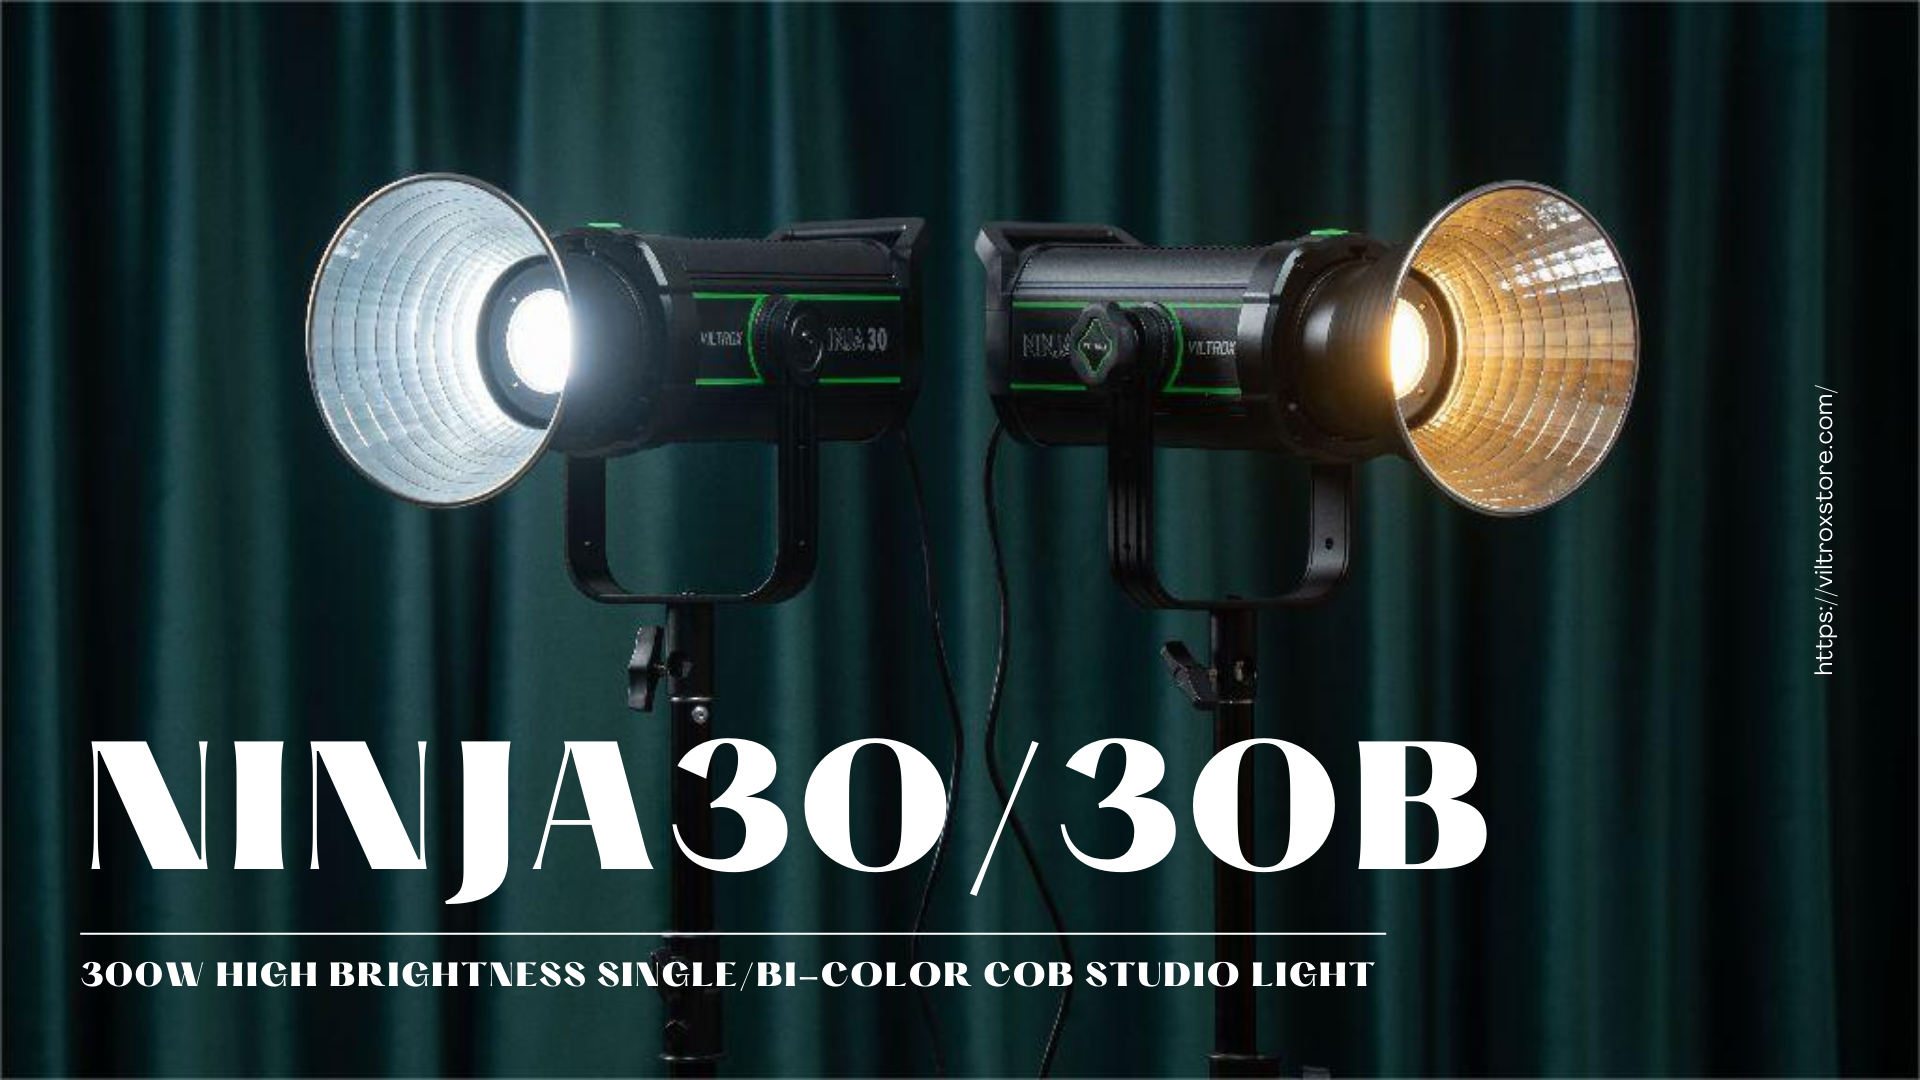 VILTROX NINJA 30/30B: A Silent and Efficient COB Studio Light